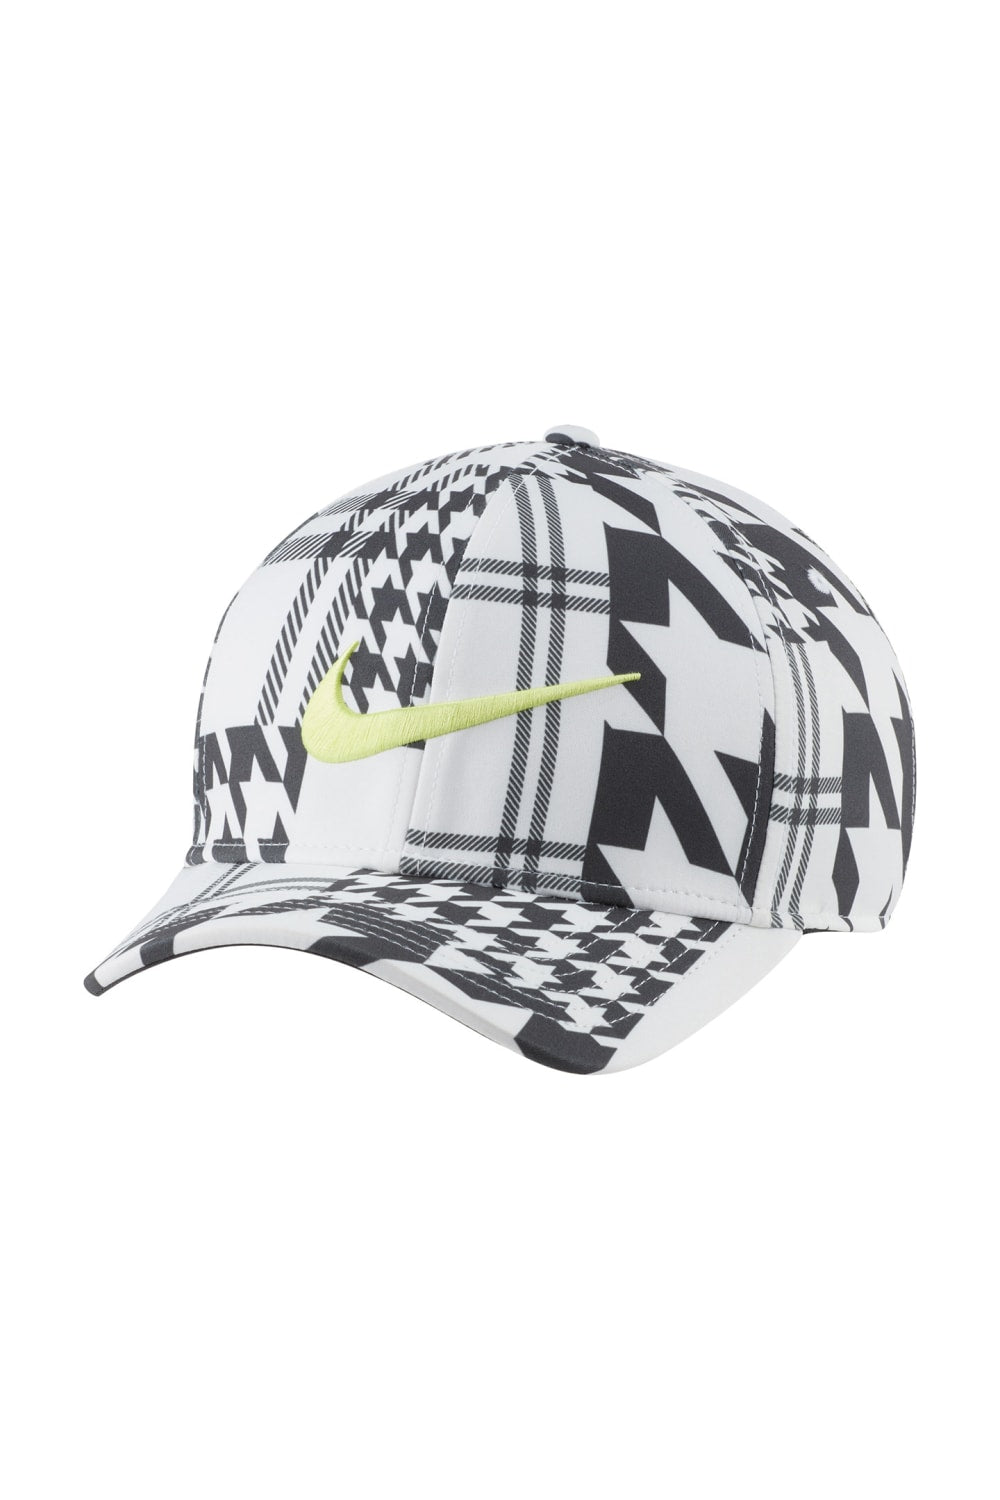 Nike Arobill Baseball Cap (White/Anthracite Grey/Light Lemon Twist)